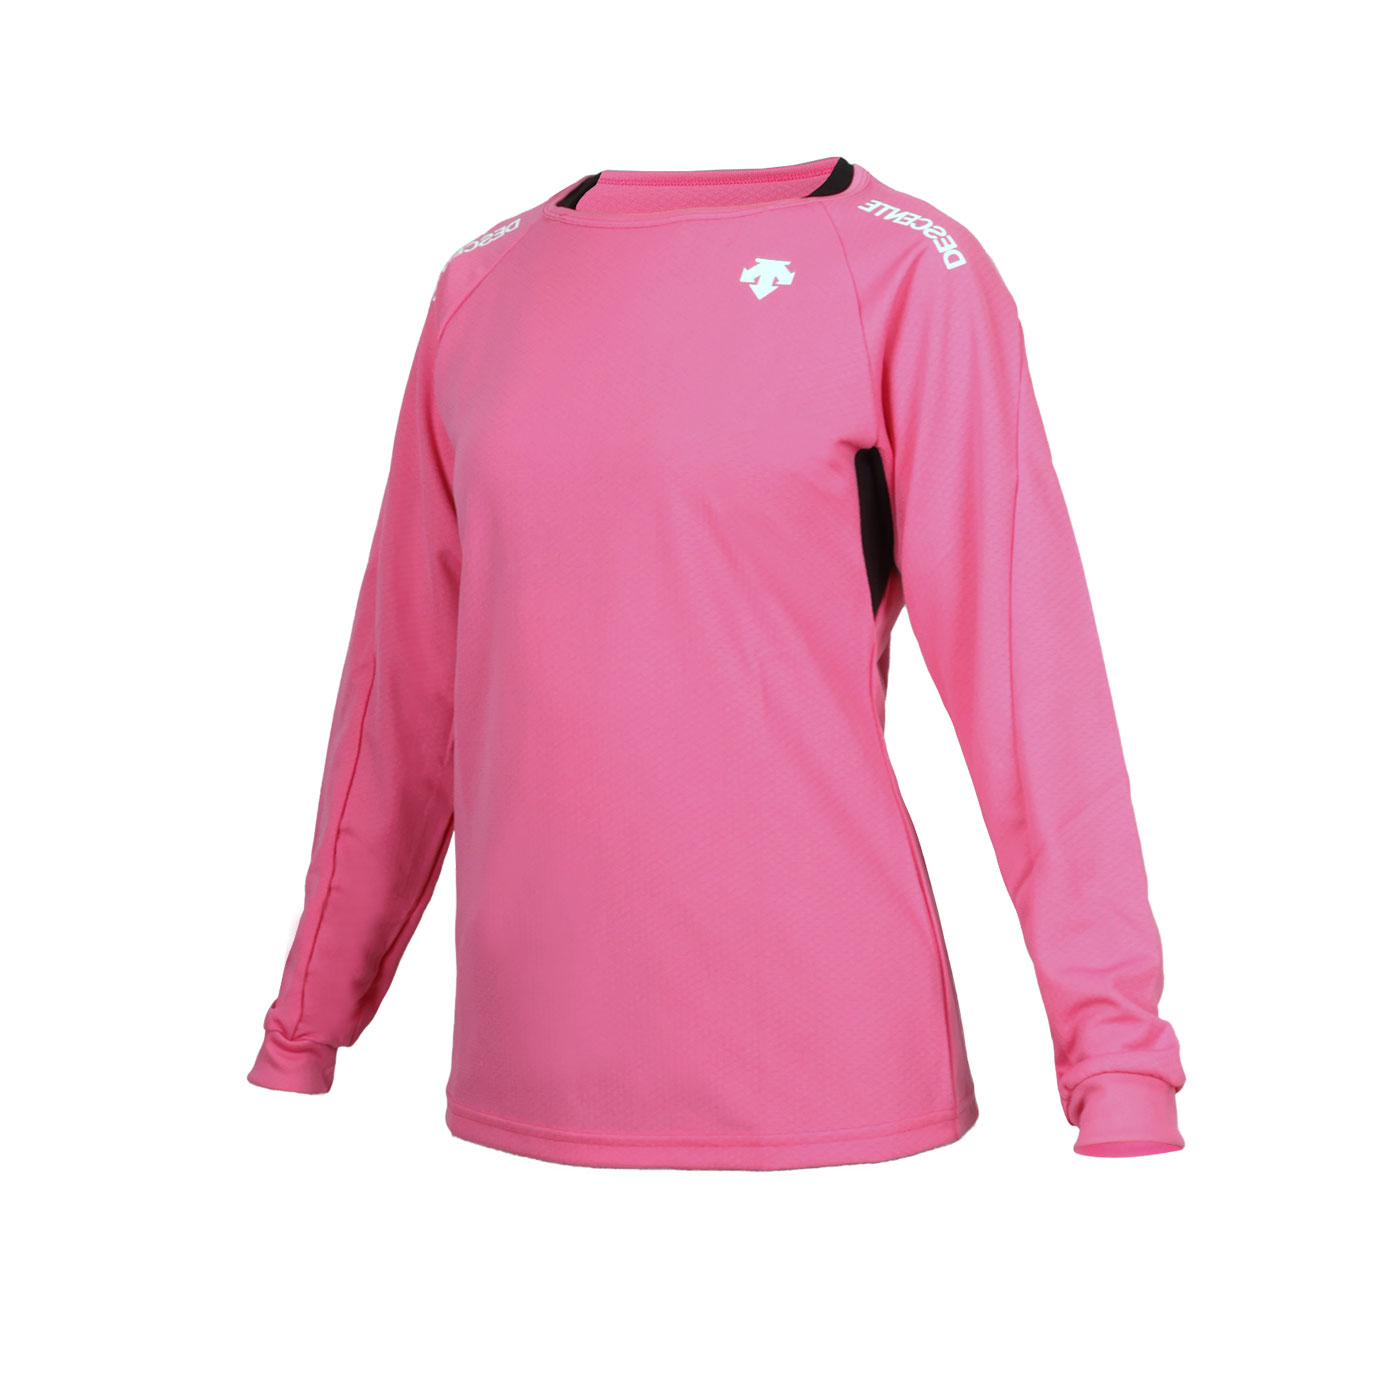 DESCENTE 女款排球長袖T恤  DVB-5213WBT-PPK - 粉紅白黑